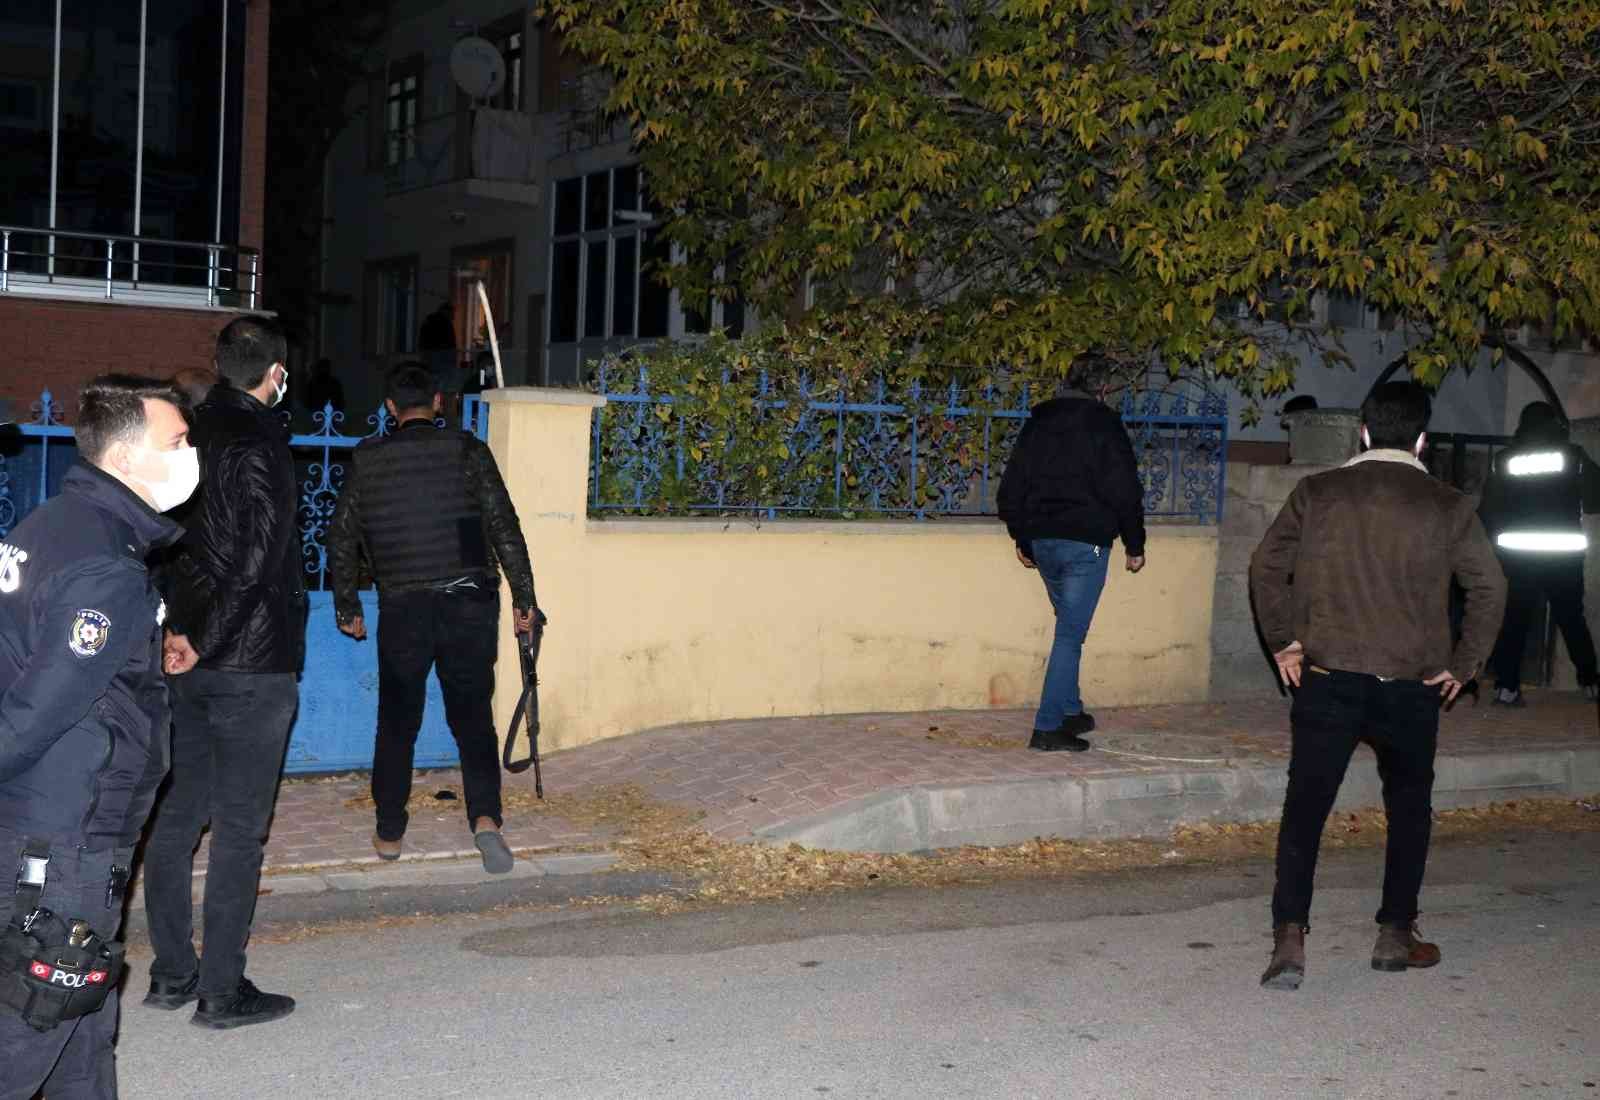 Erzincan’da hareketli gece: Balkondan rastgele ateş açan alkollü şahıs, polisin operasyonuyla etkisiz hale getirildi #erzincan